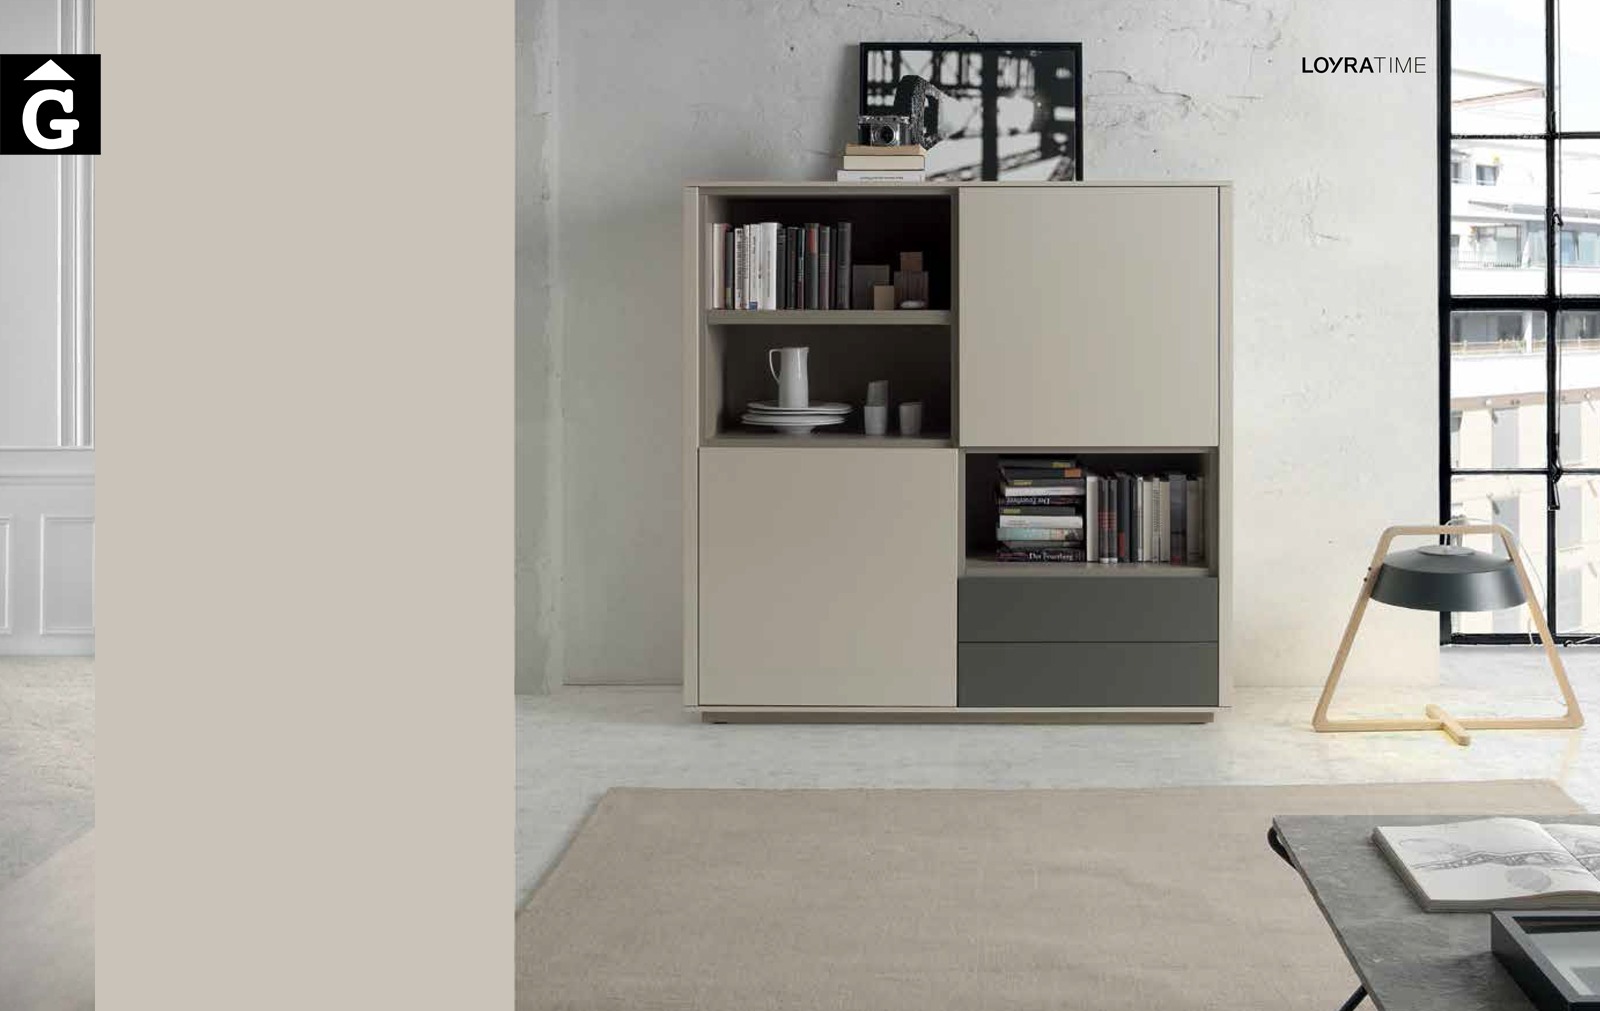 Moss moble Contenidor 0 Loyra muebles by mobles Gifreu Idees per la llar moble de qualitat